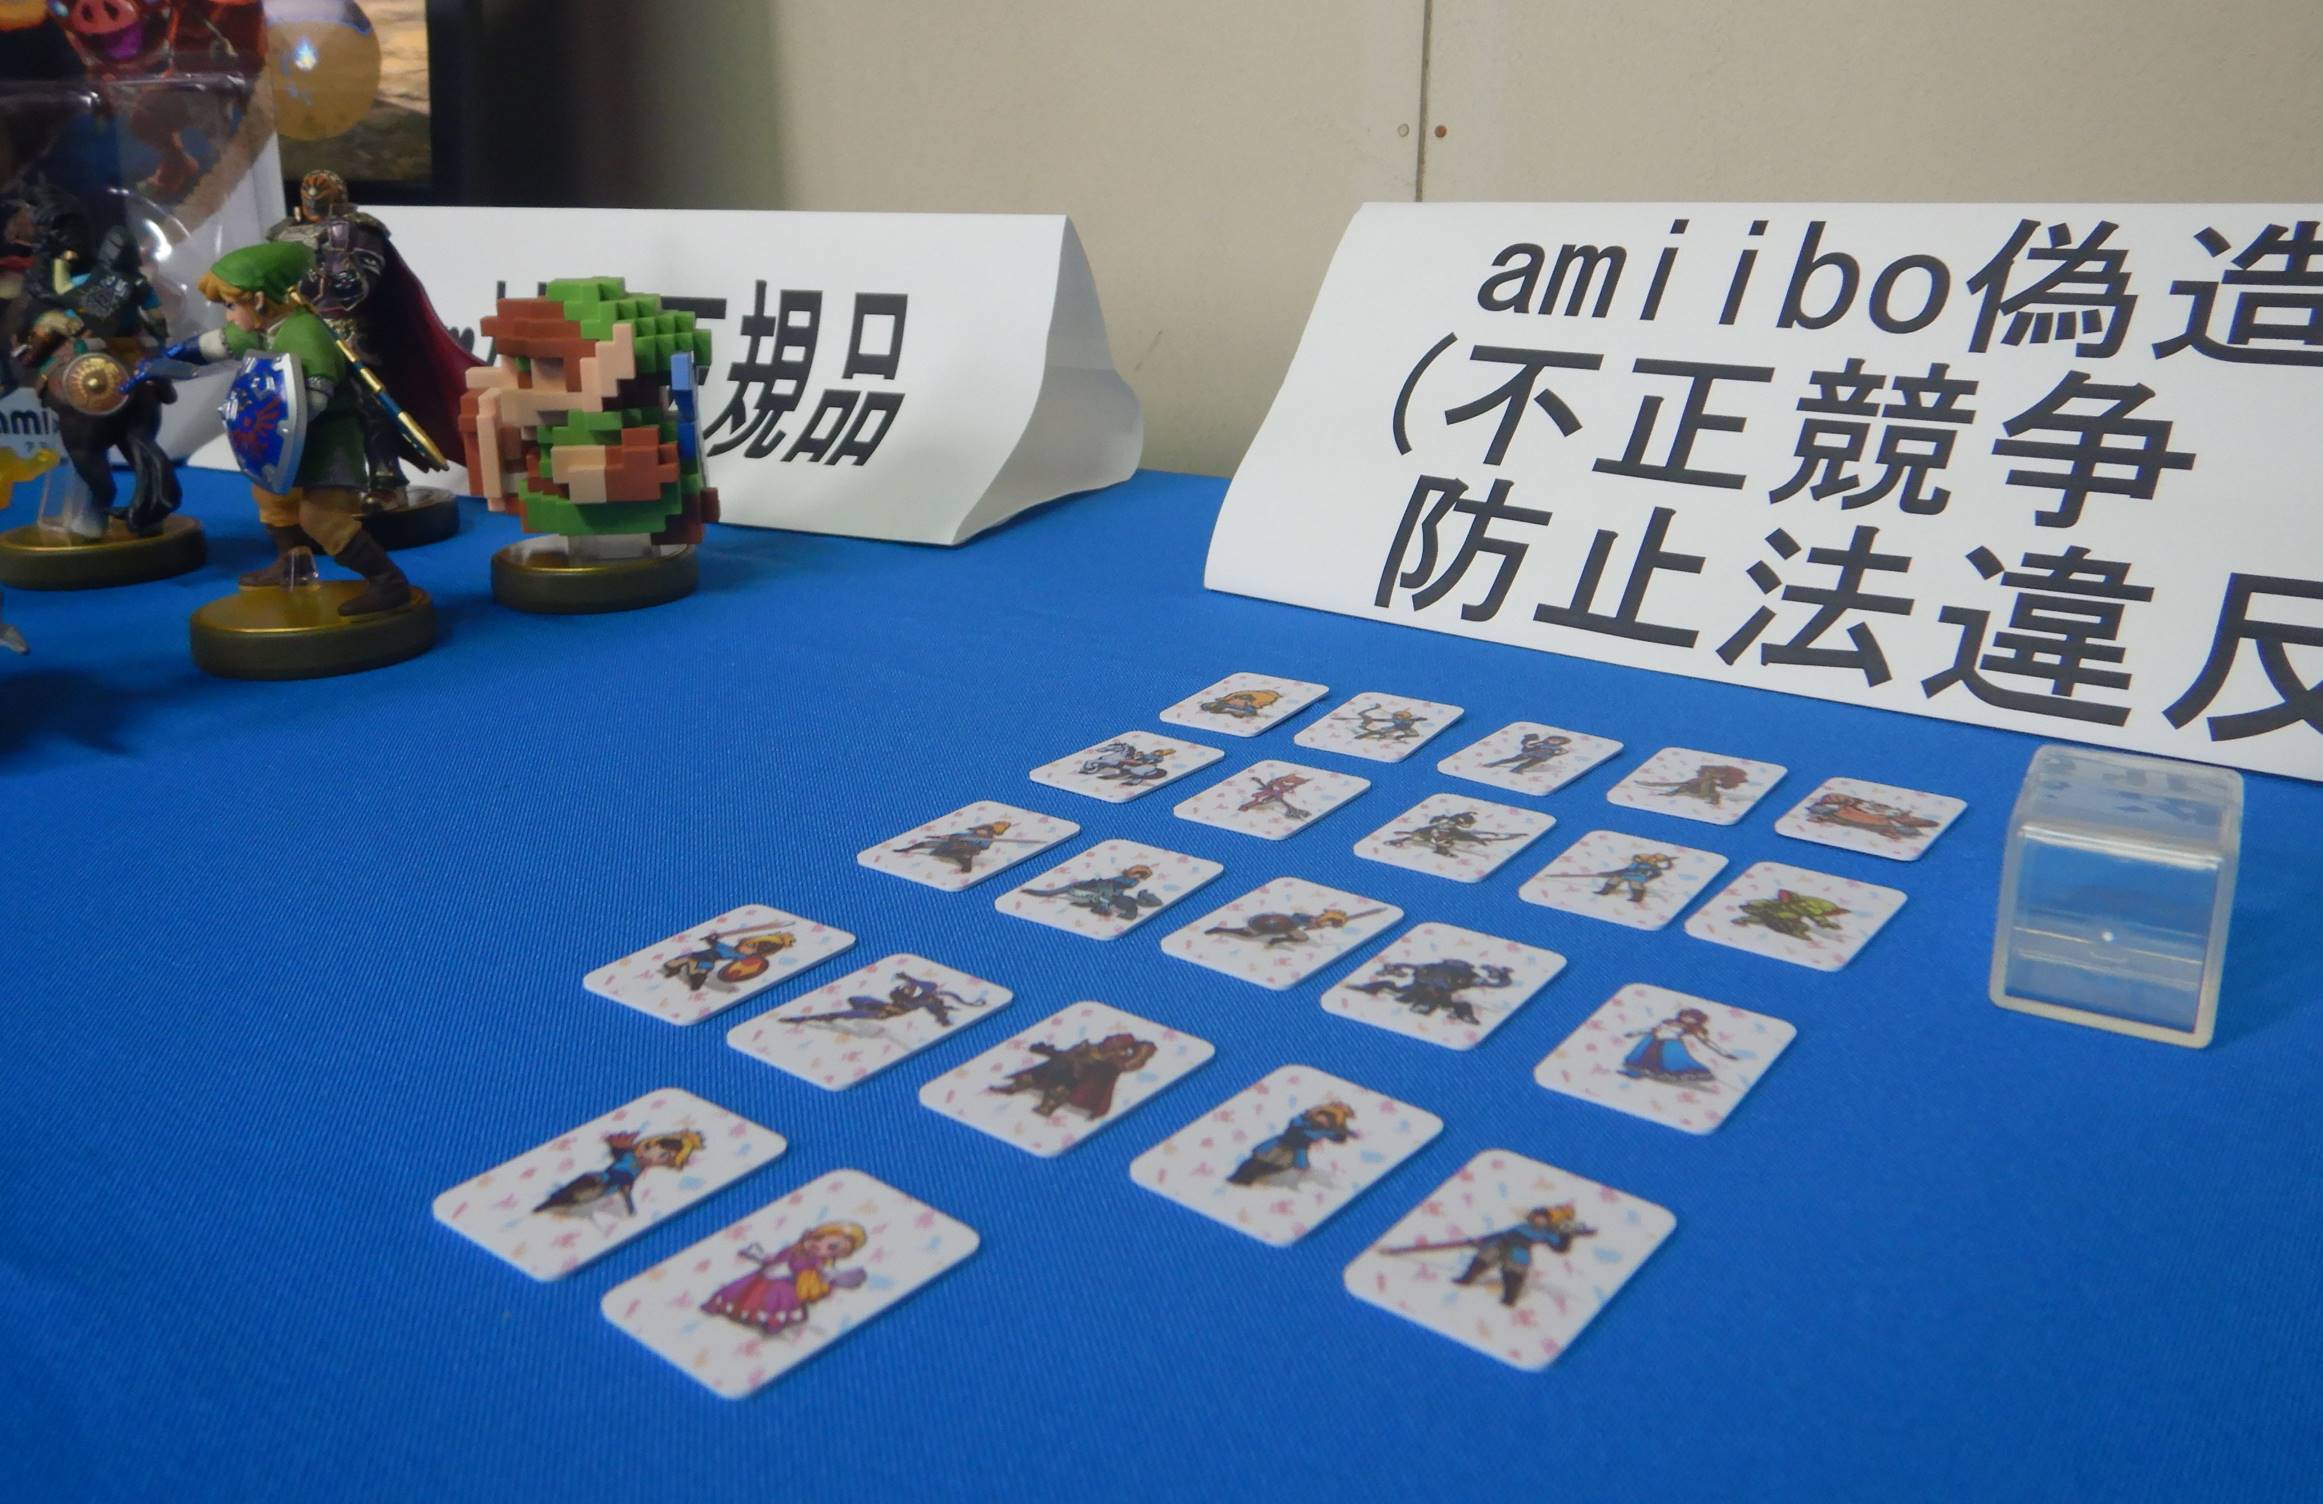 任天堂「アミーボ」偽造カード、ヤフオクで販売　34歳男を容疑で書類送検、米通販で仕入れ